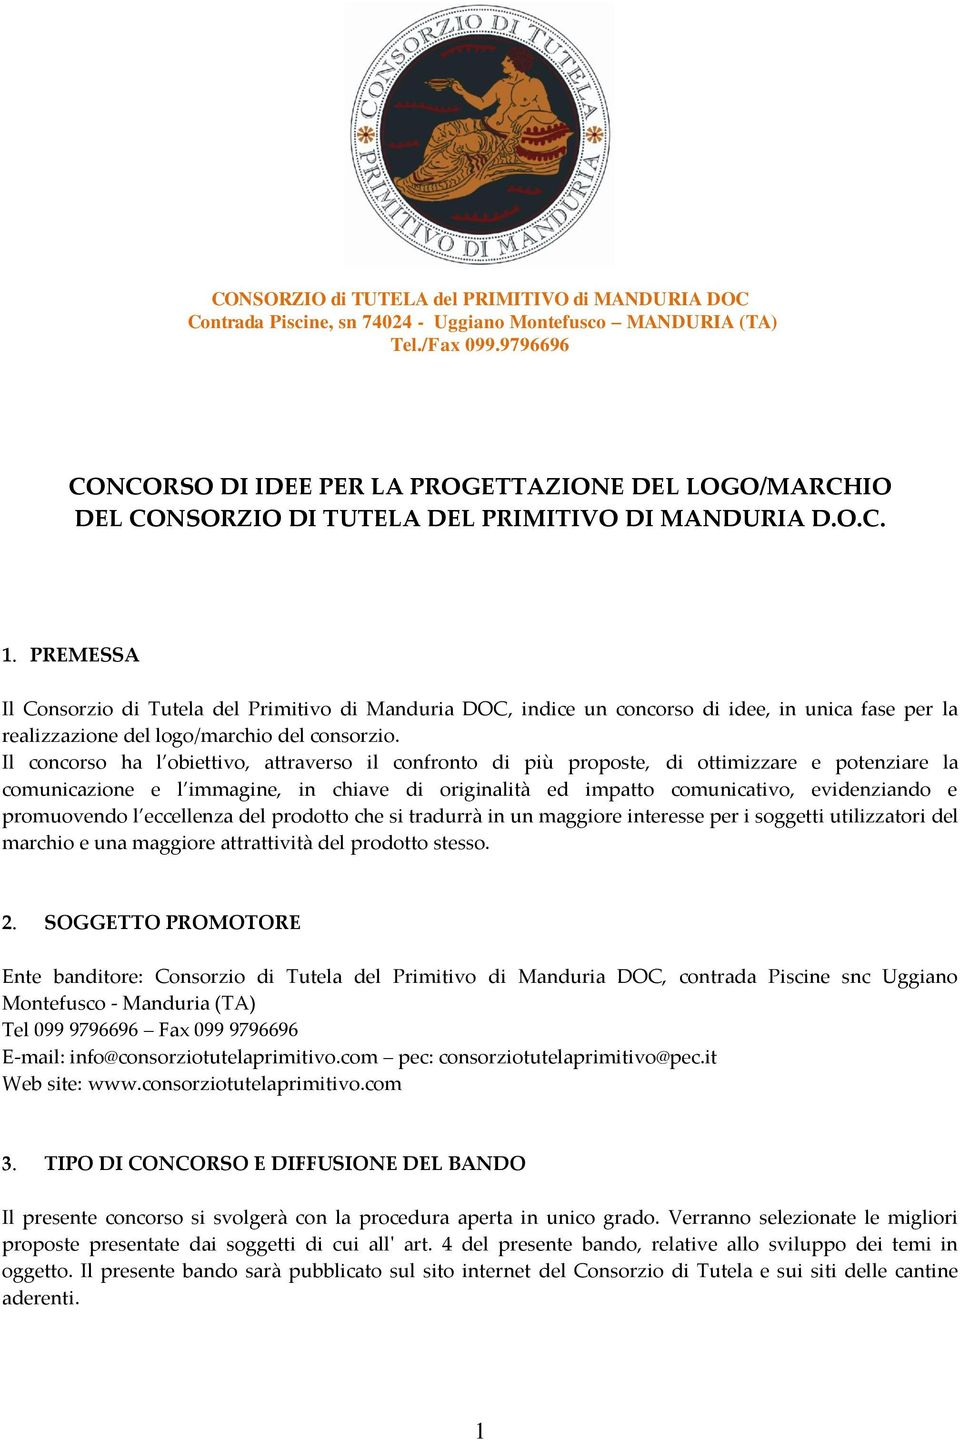 PREMESSA Il Consorzio di Tutela del Primitivo di Manduria DOC, indice un concorso di idee, in unica fase per la realizzazione del logo/marchio del consorzio.